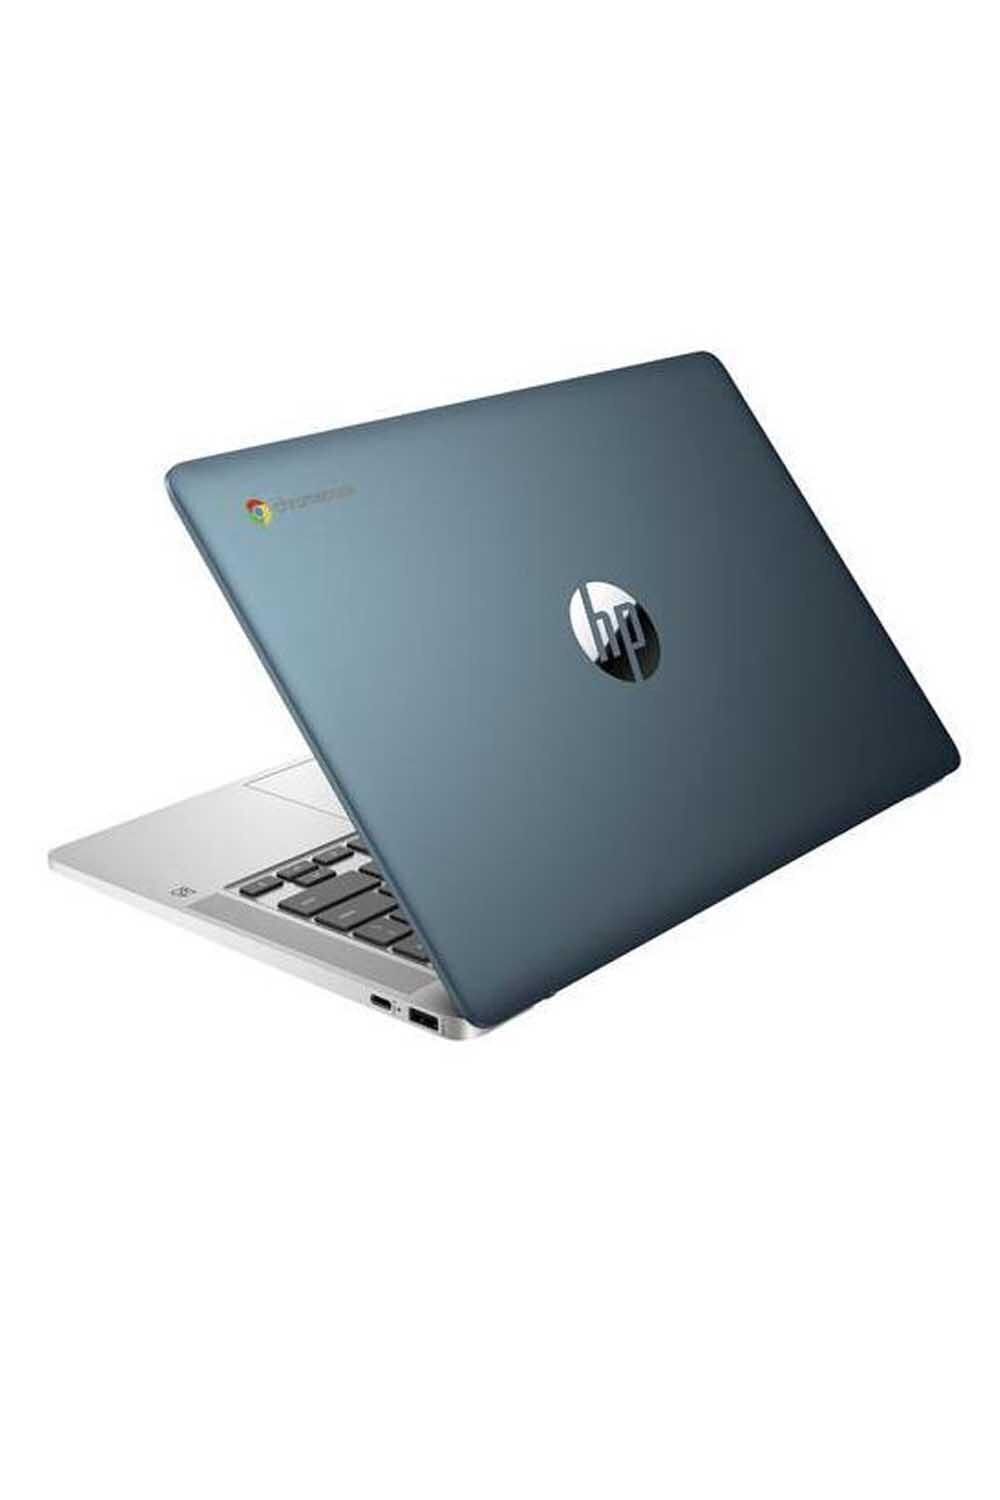 HP 14a-na0220nr 14in Laptop Intel N4120 4gb 64gb eMMC